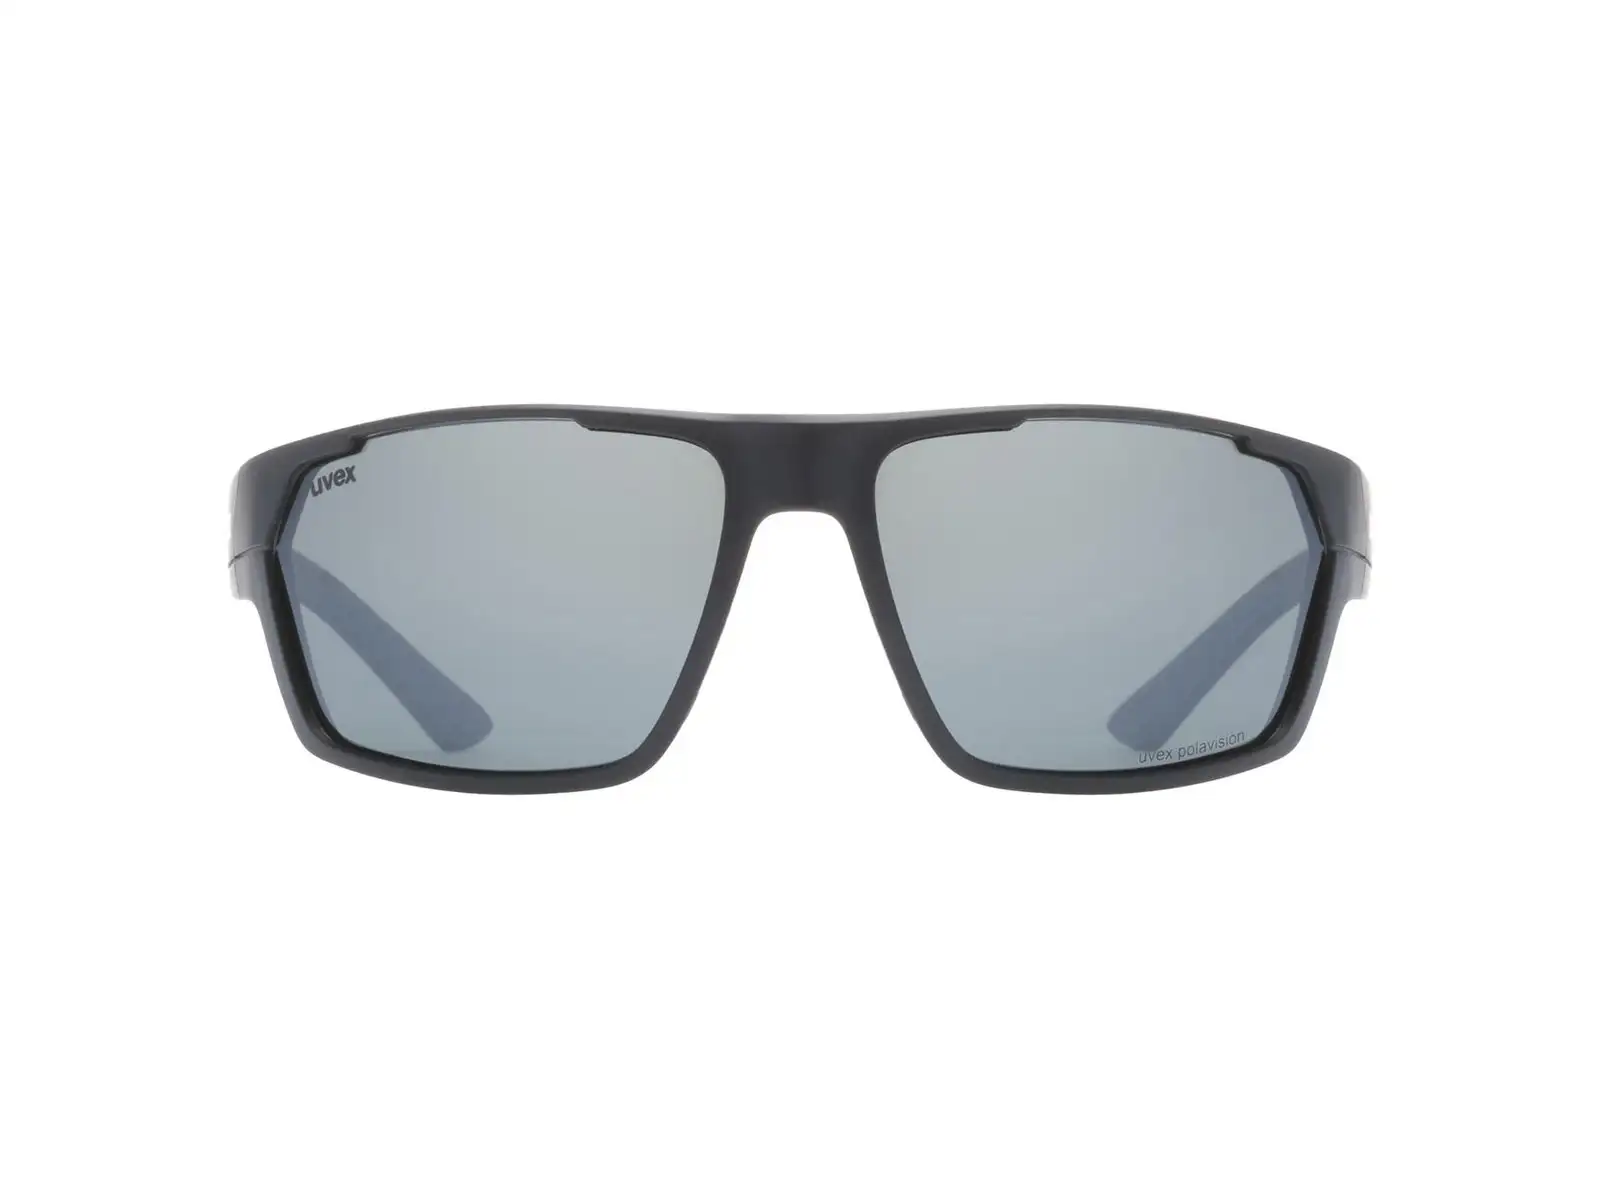 Slnečné okuliare Uvex Sportstyle 233 P Black Mat/Polav